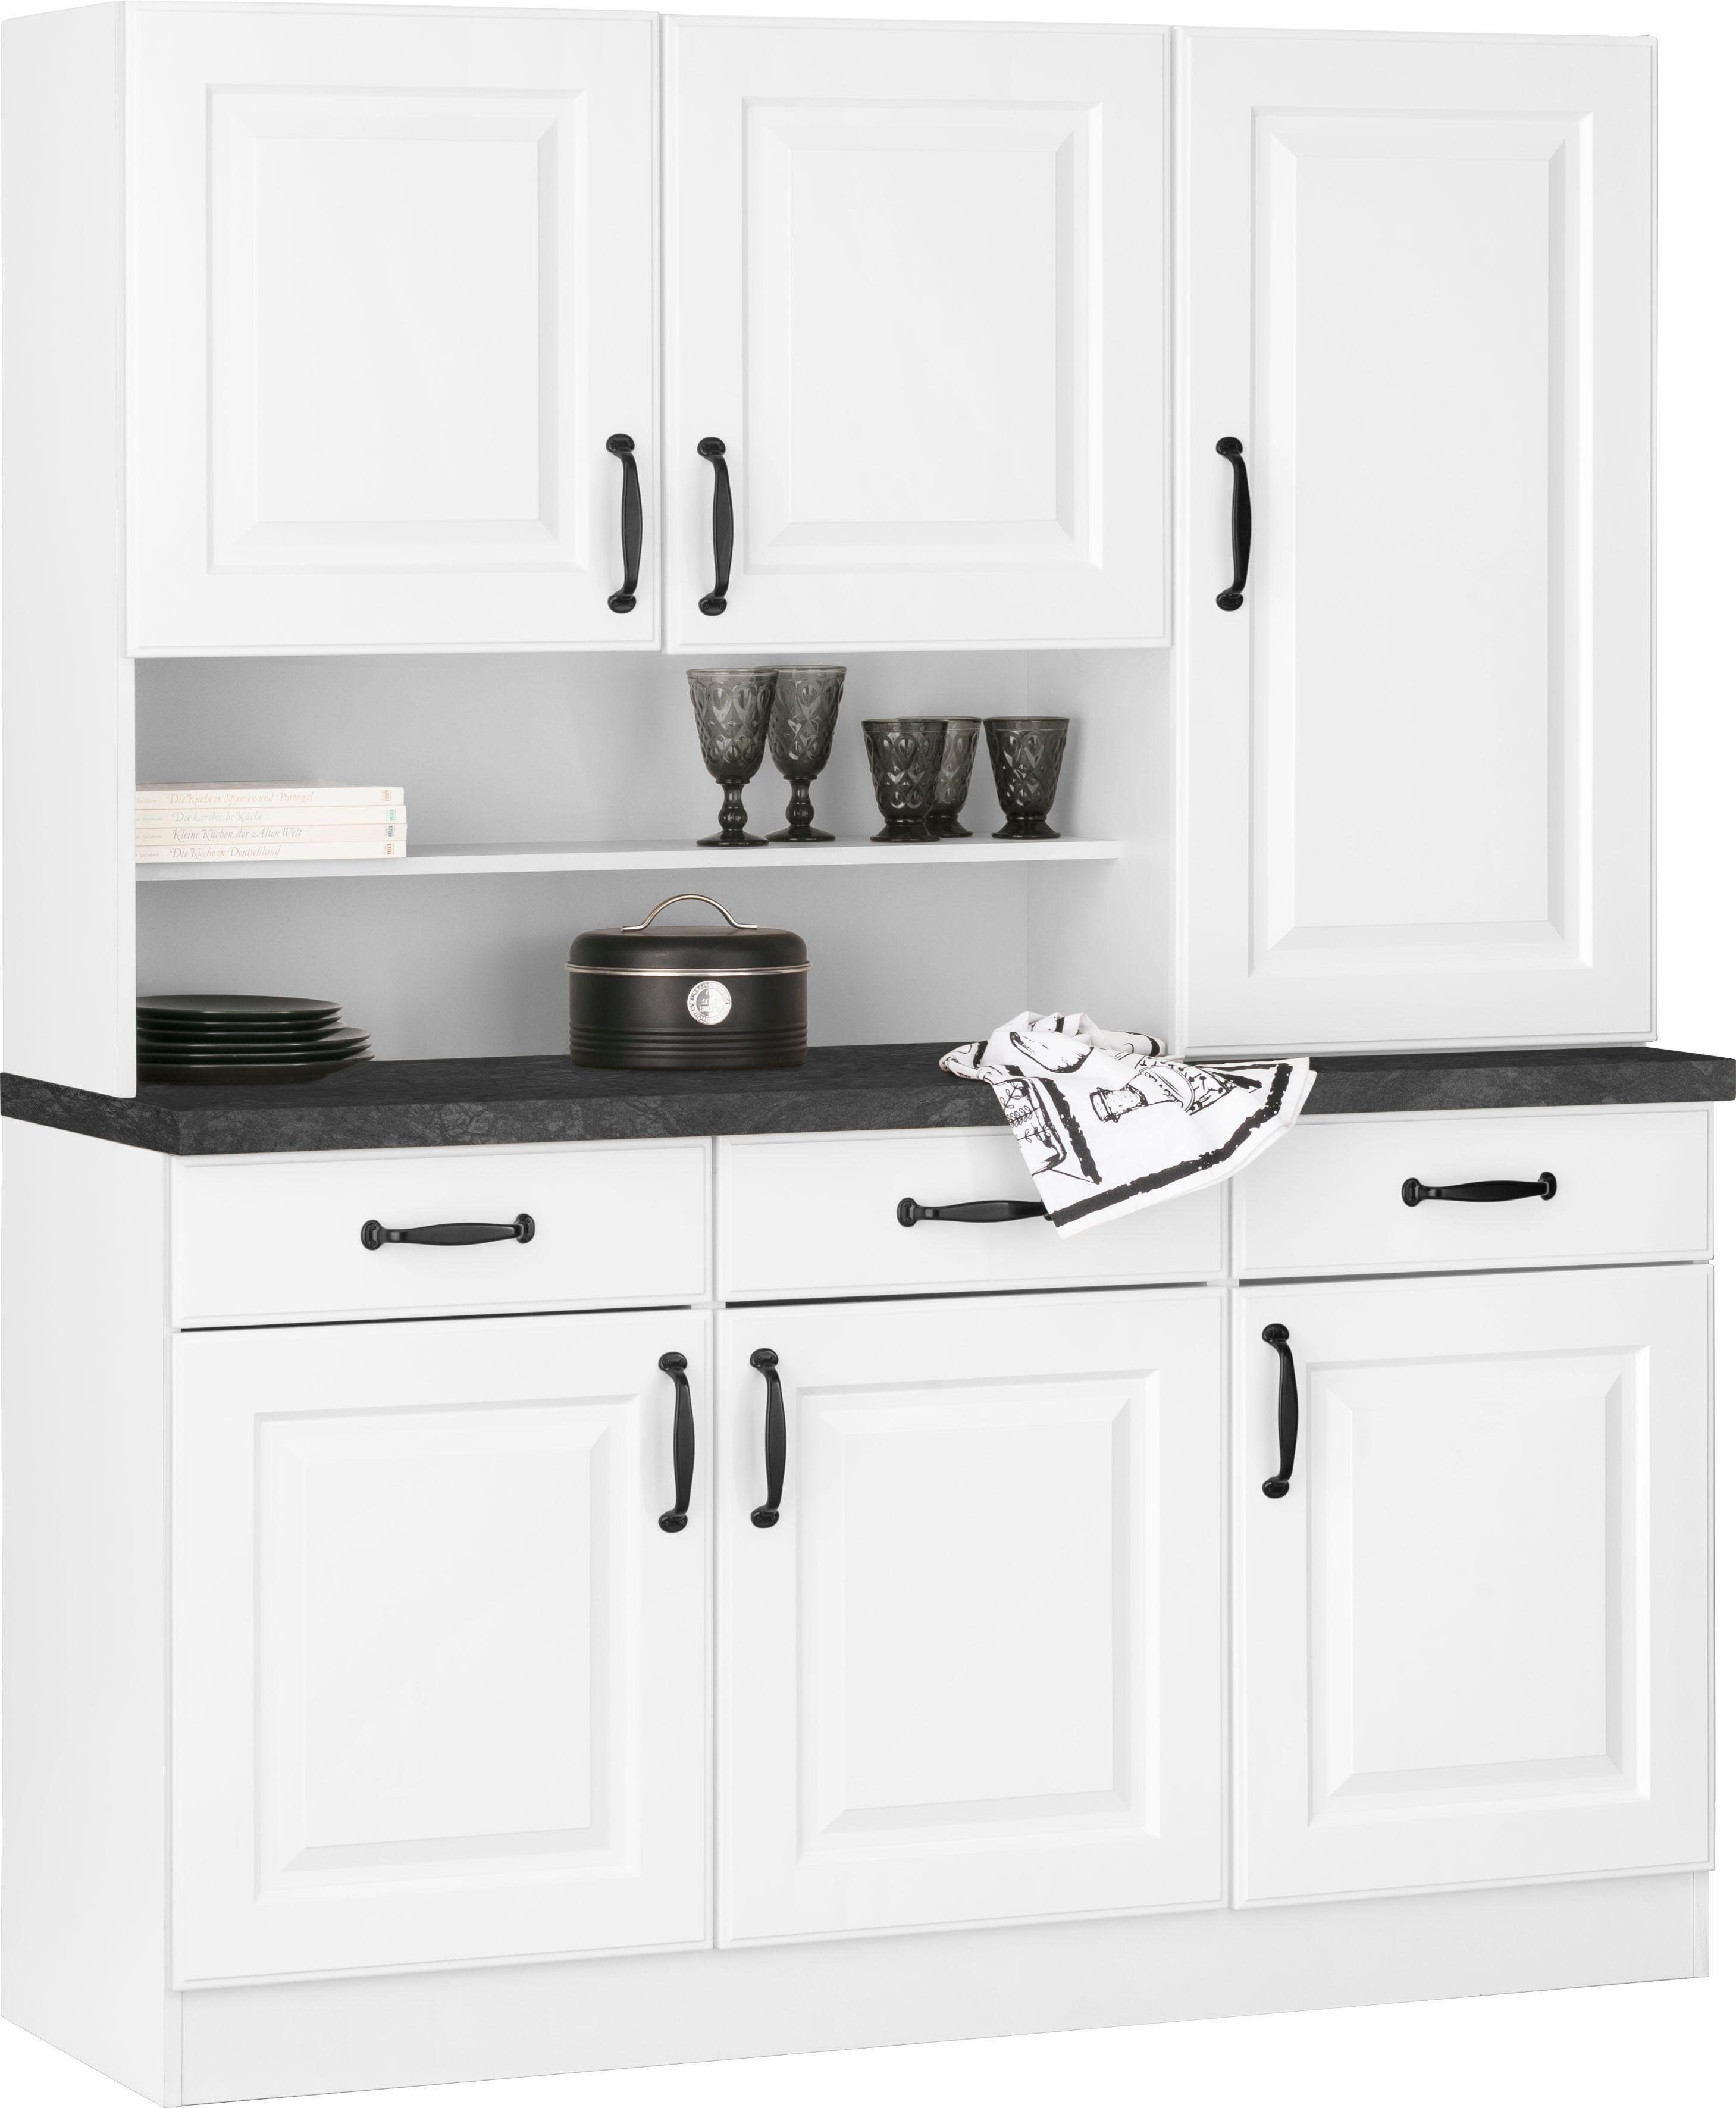 Kassettenfront 150 cm weiß mit Erla Küchen | wiho weiß/granit schwarz Küchenbuffet breit